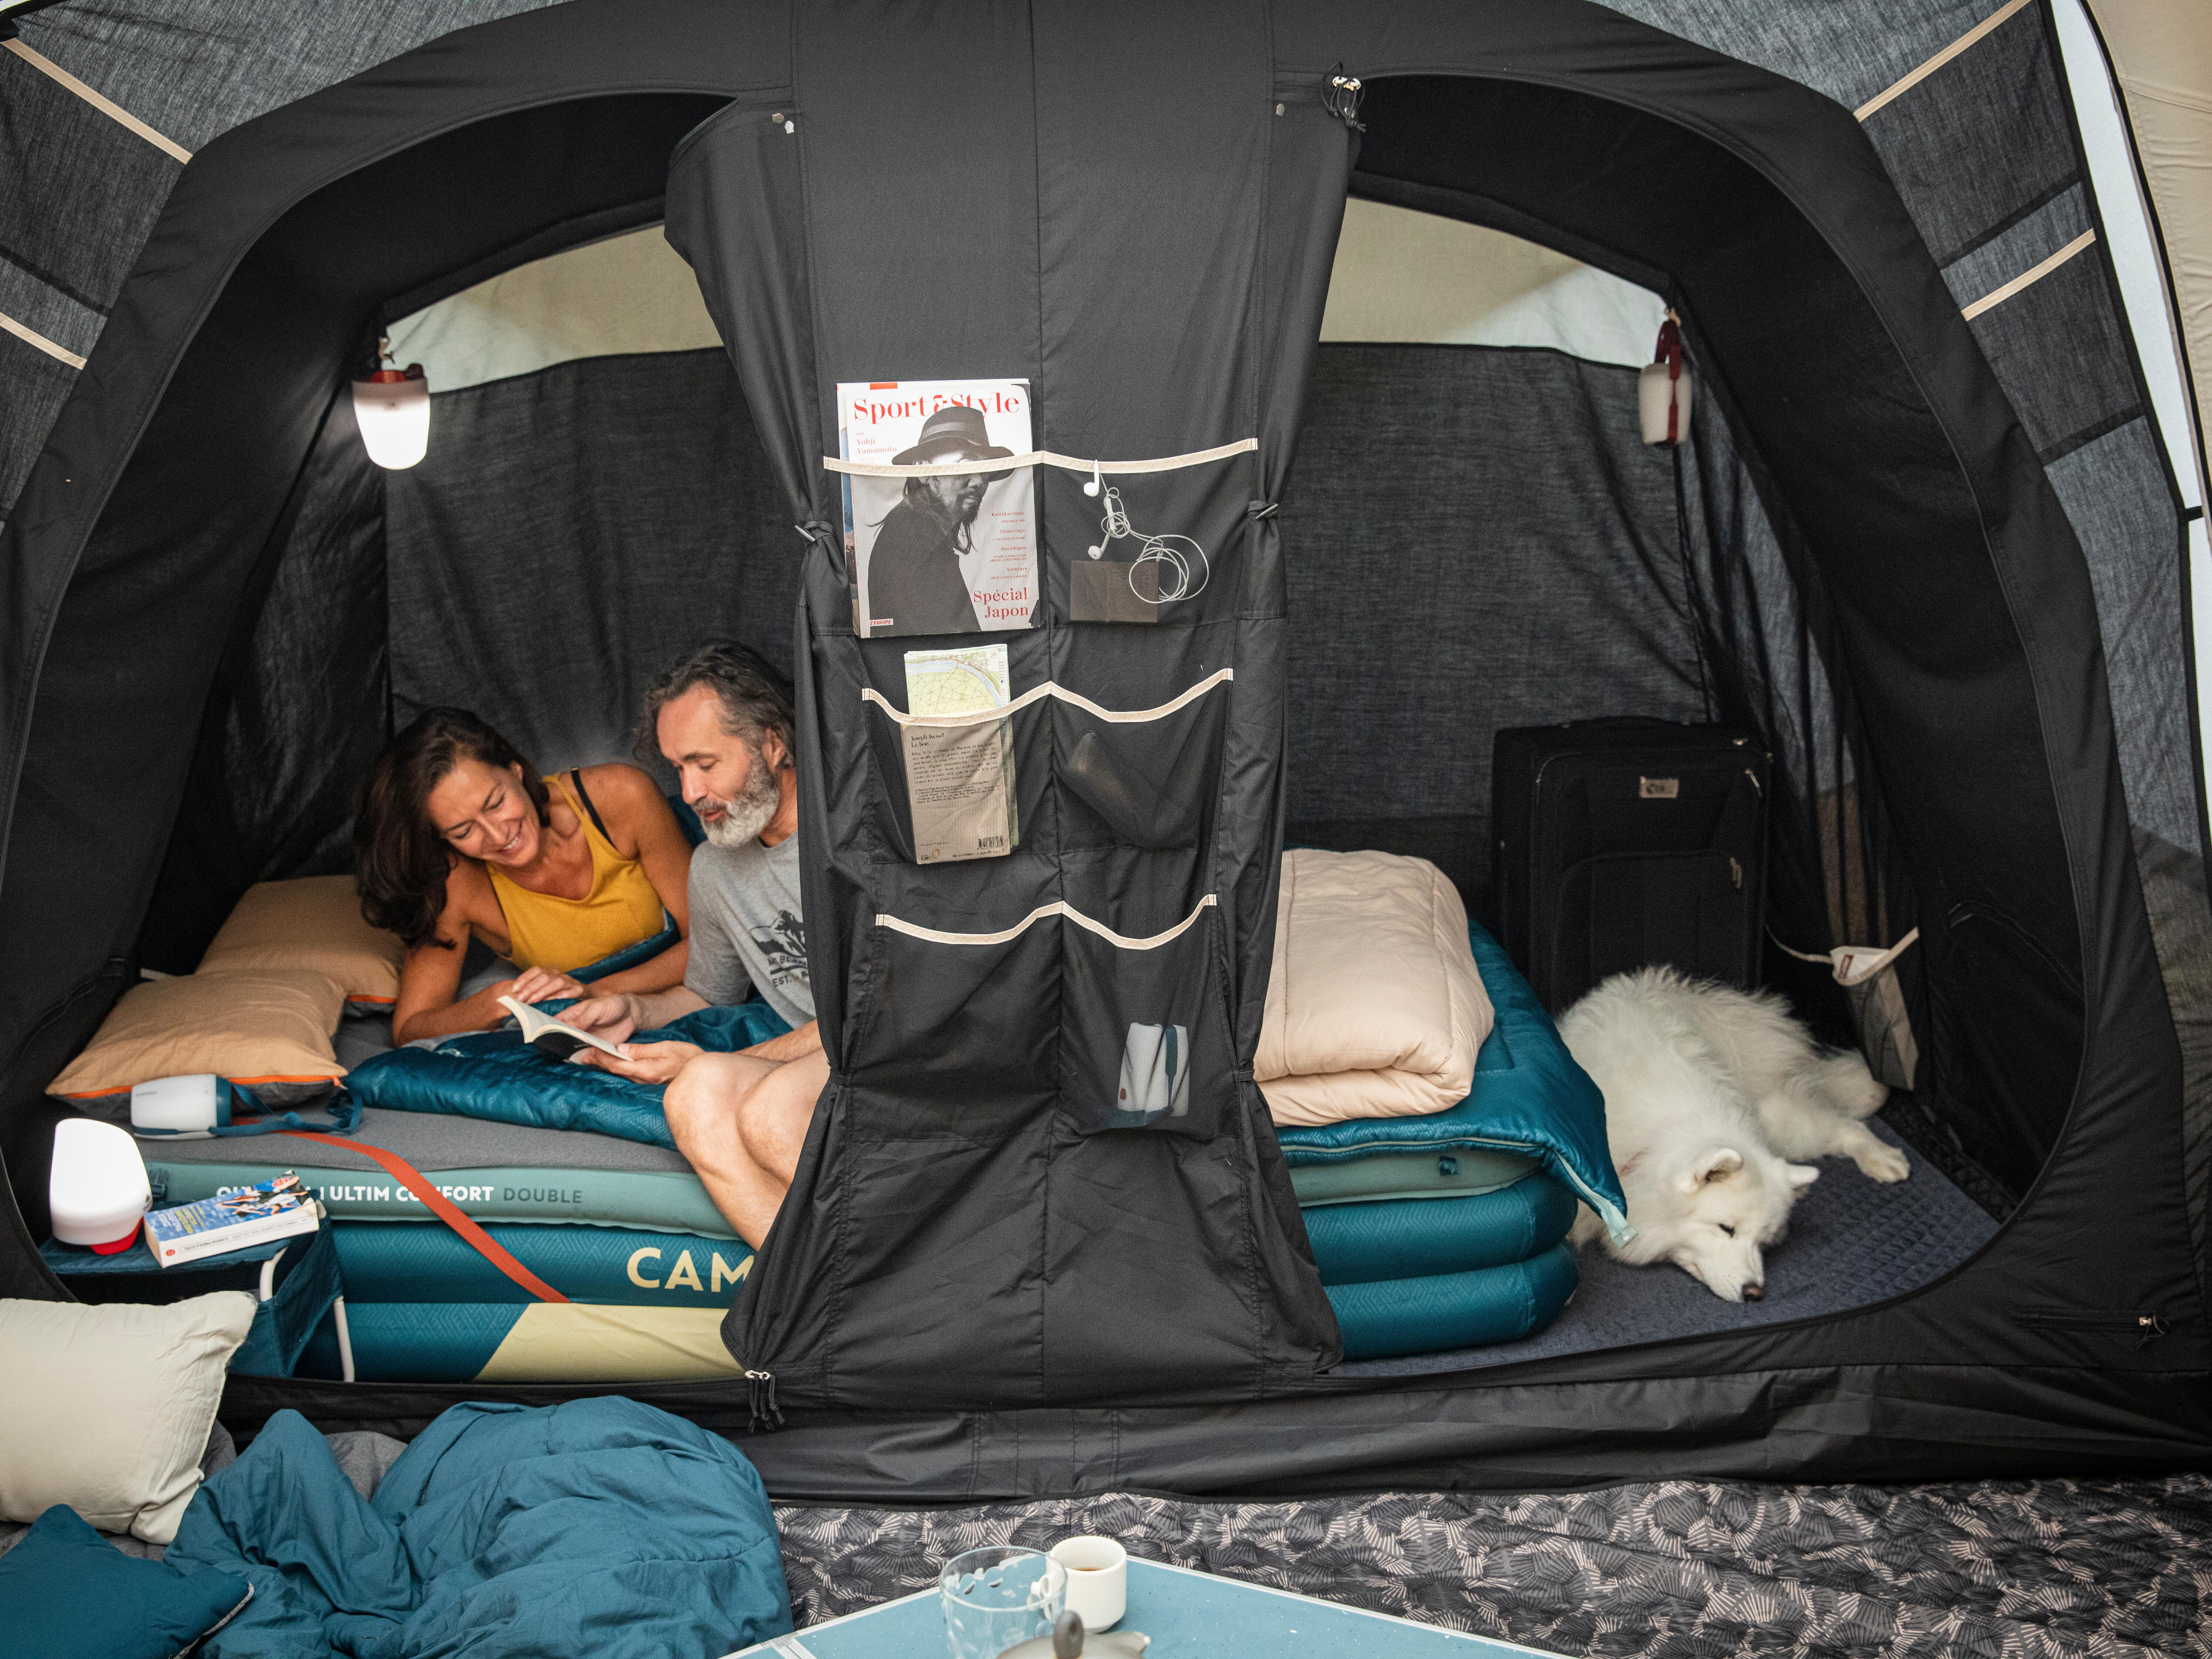 Lit de camp pour une personne, tente de camping pliable avec